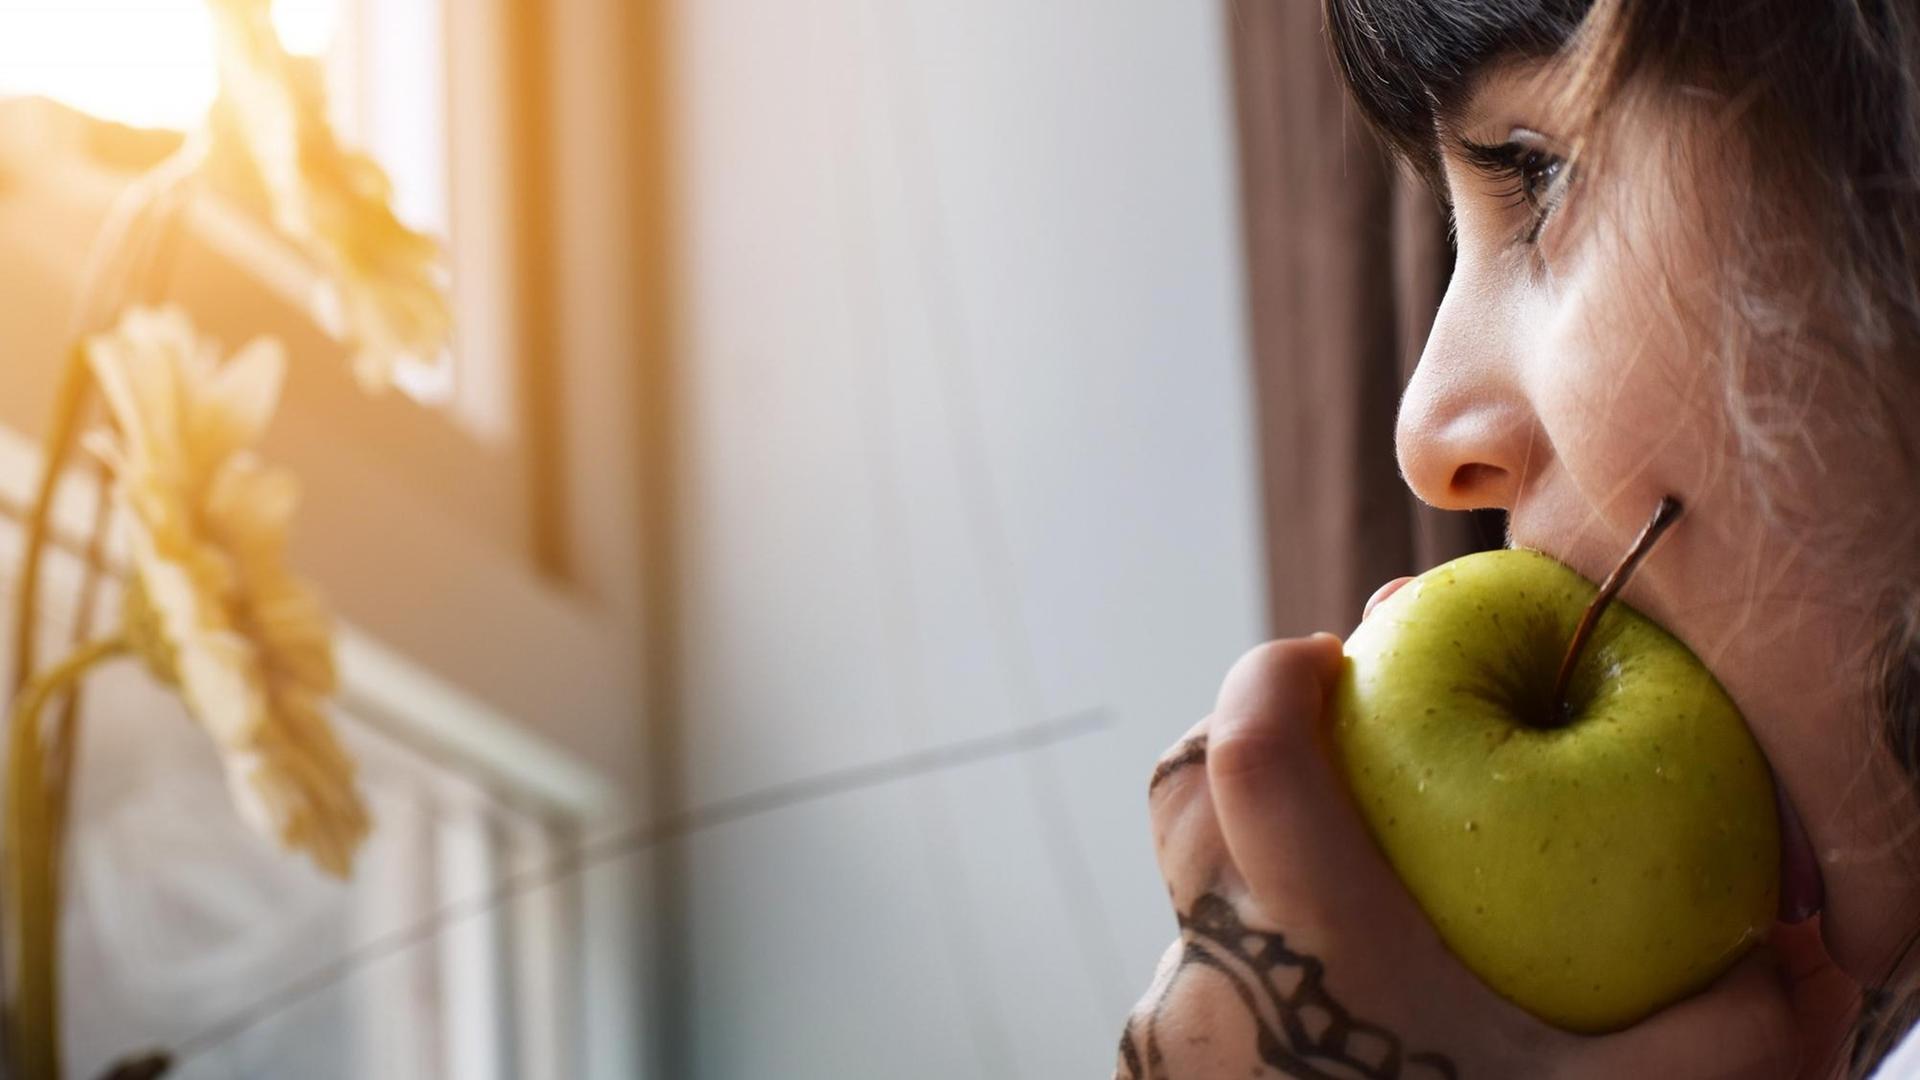 Eine junge Frau isst einen Apfel während sie am Fenster steht. (Symbolbild)